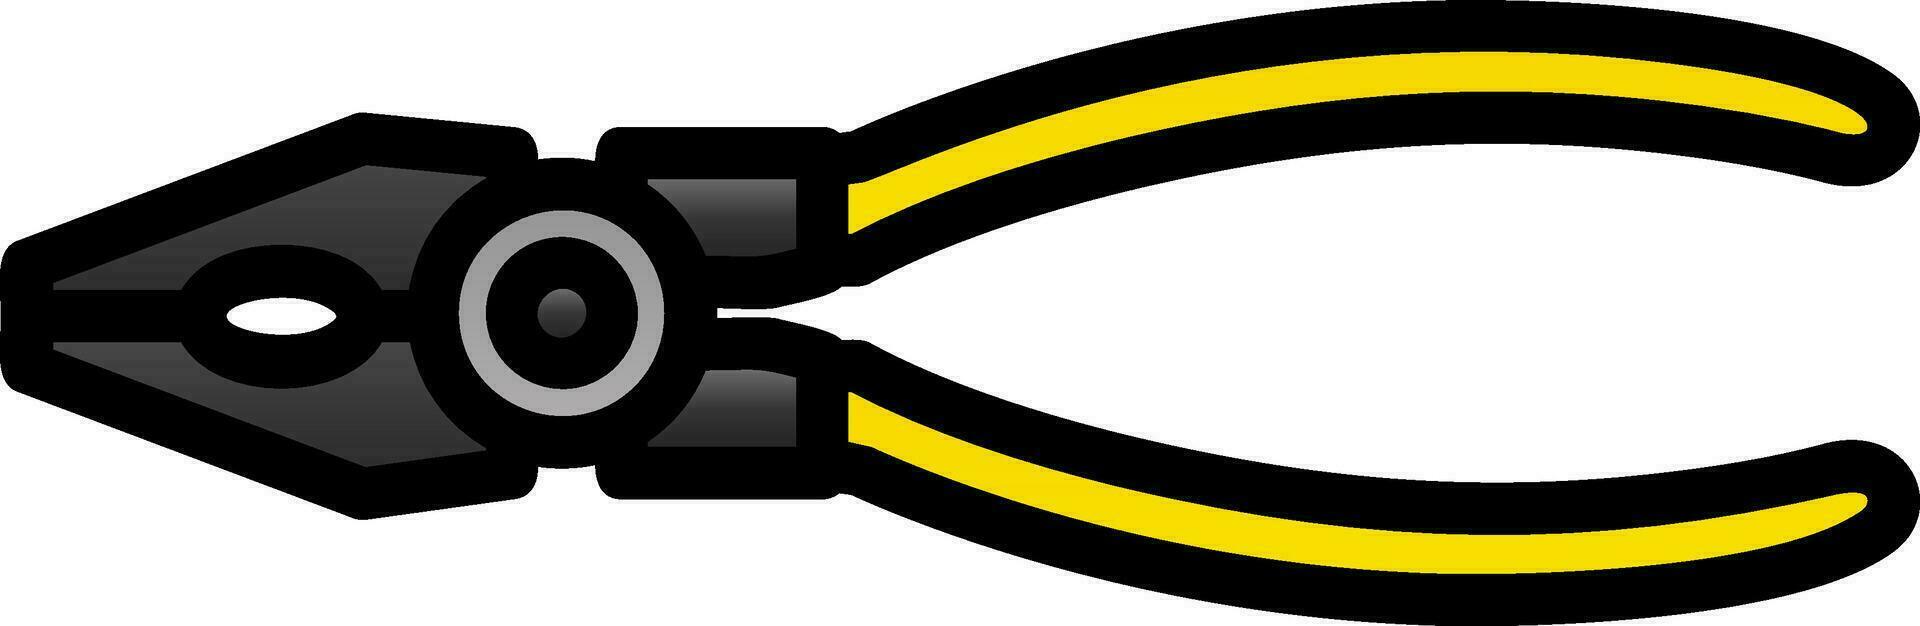 Lineman s Zange Vektor Symbol Design